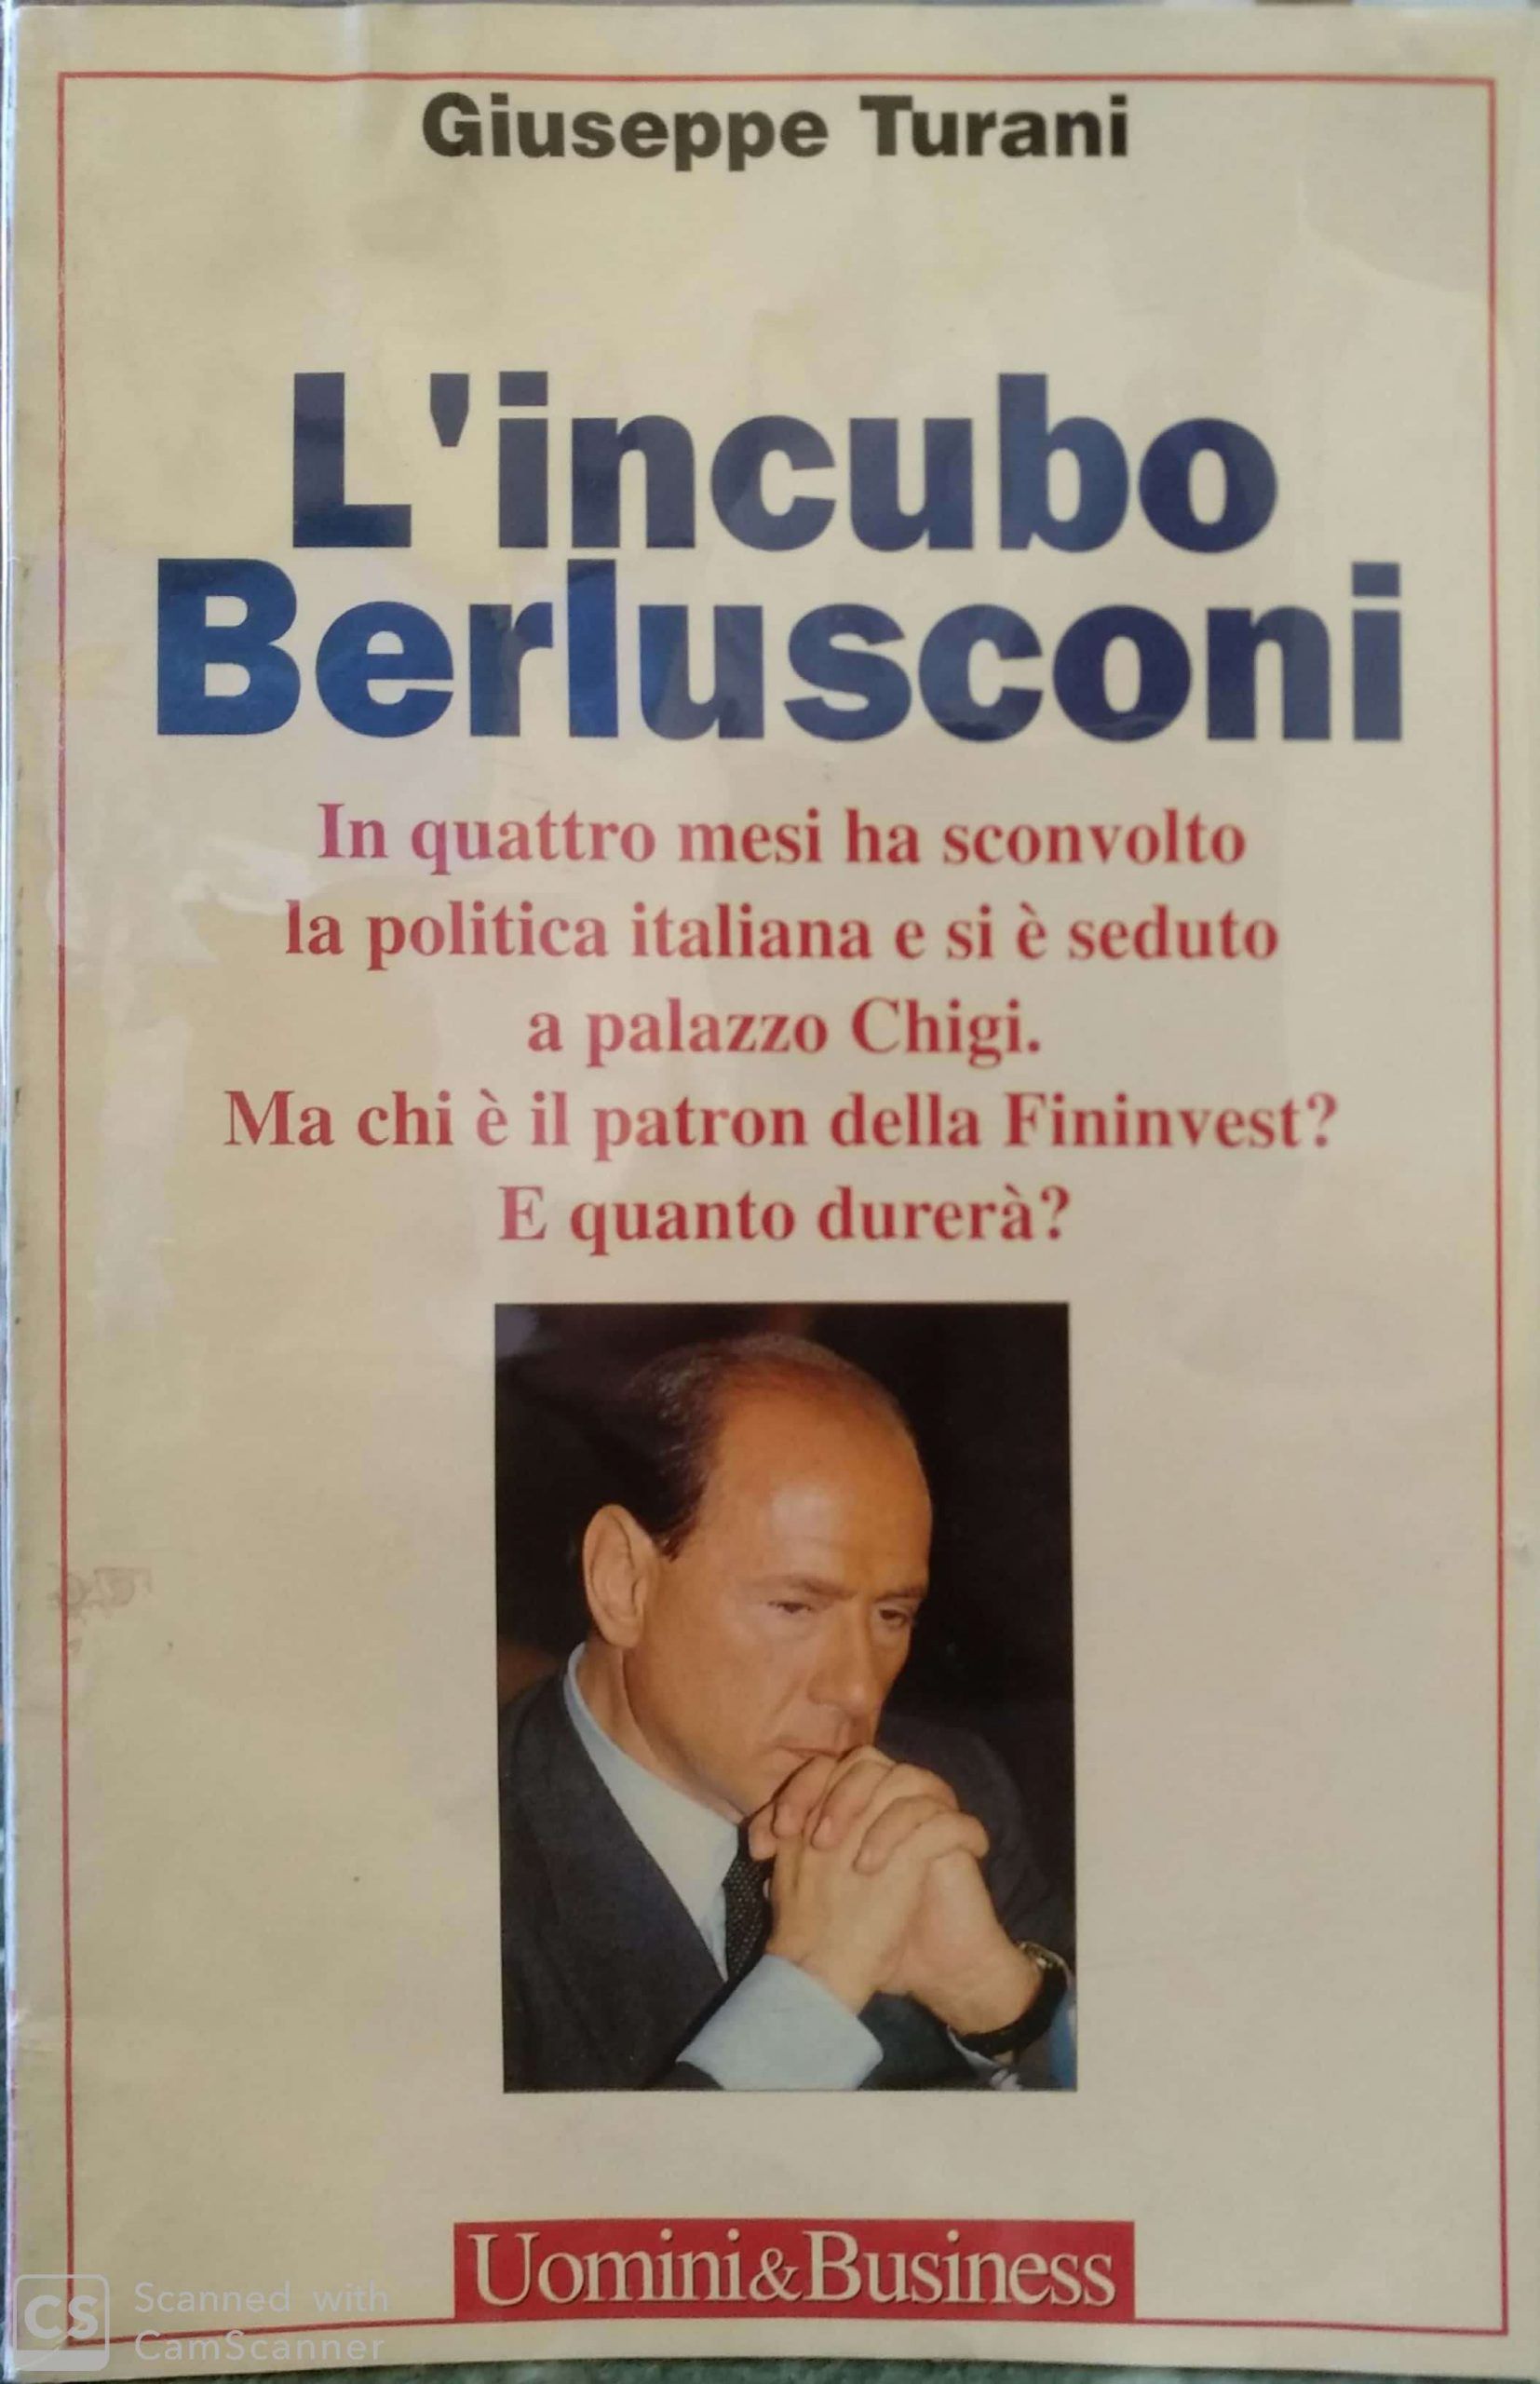 Uno sconosciuto “L’incubo Berlusconi” di Giuseppe Turani in bancarella!